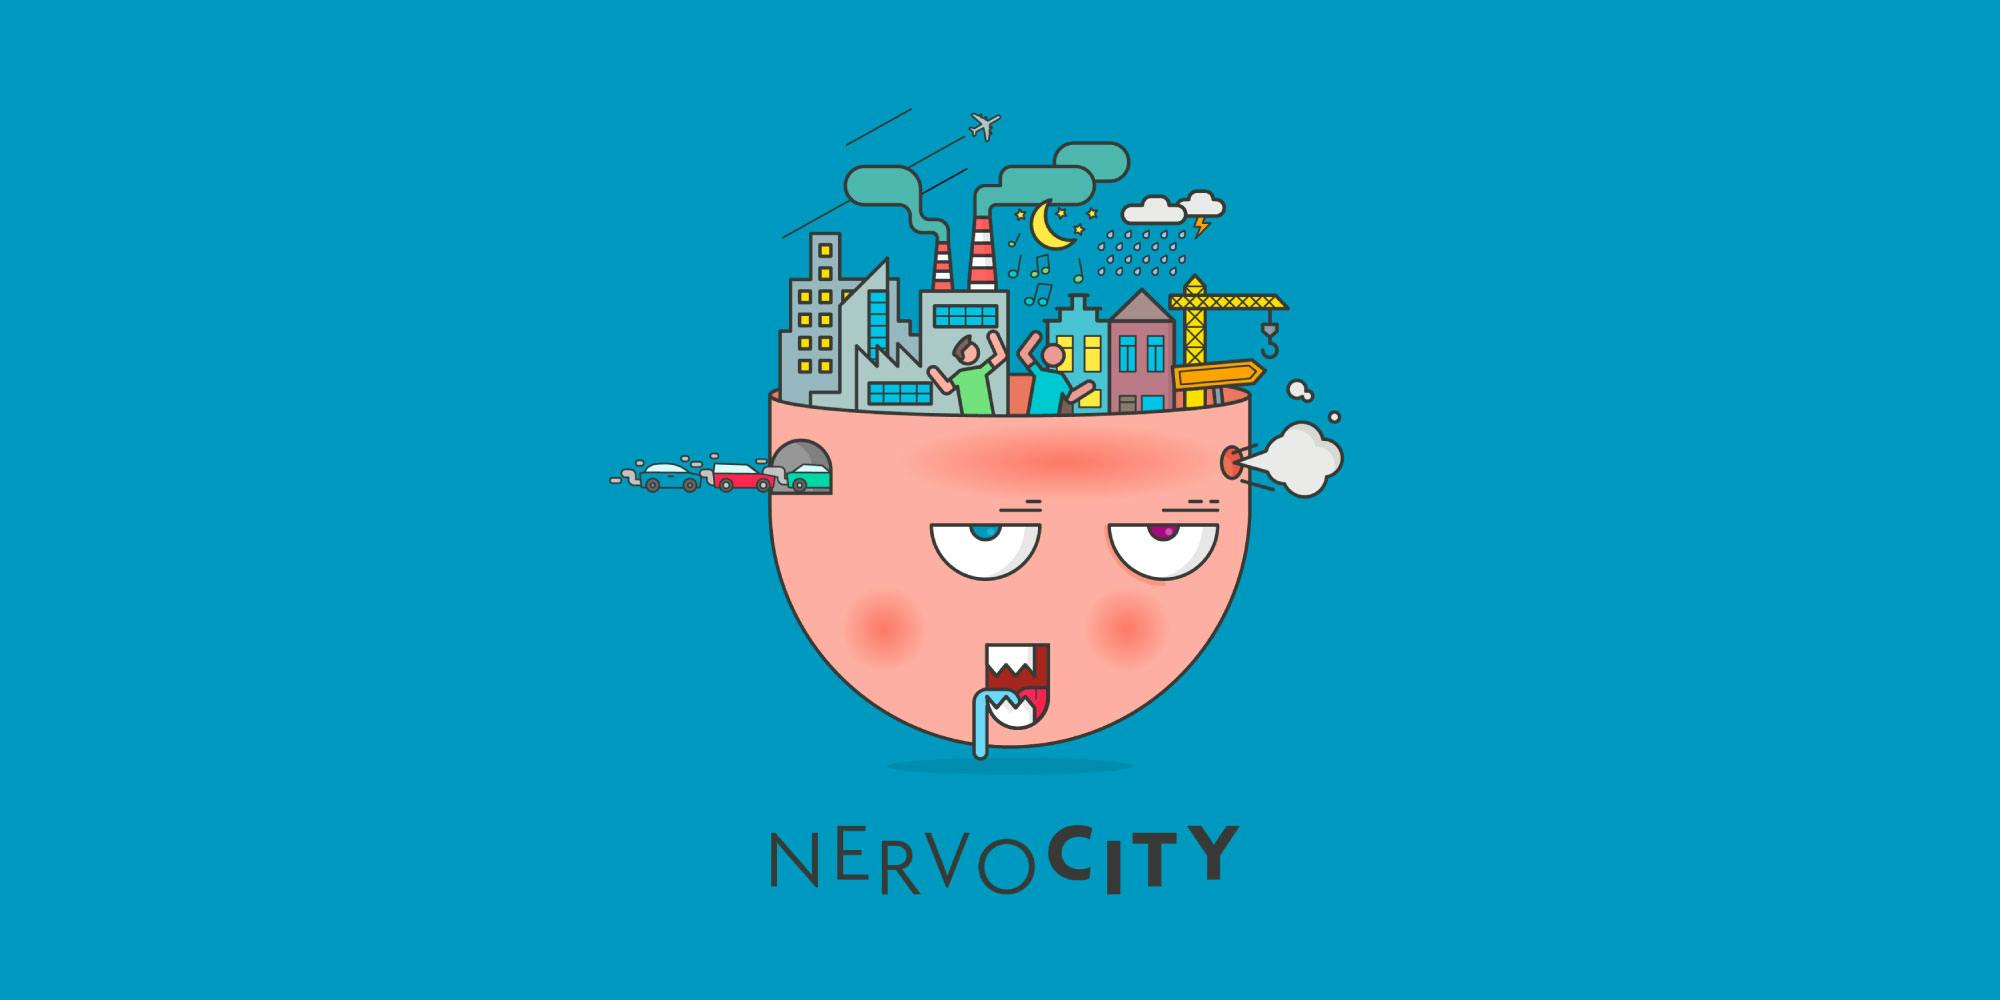 Nervocity